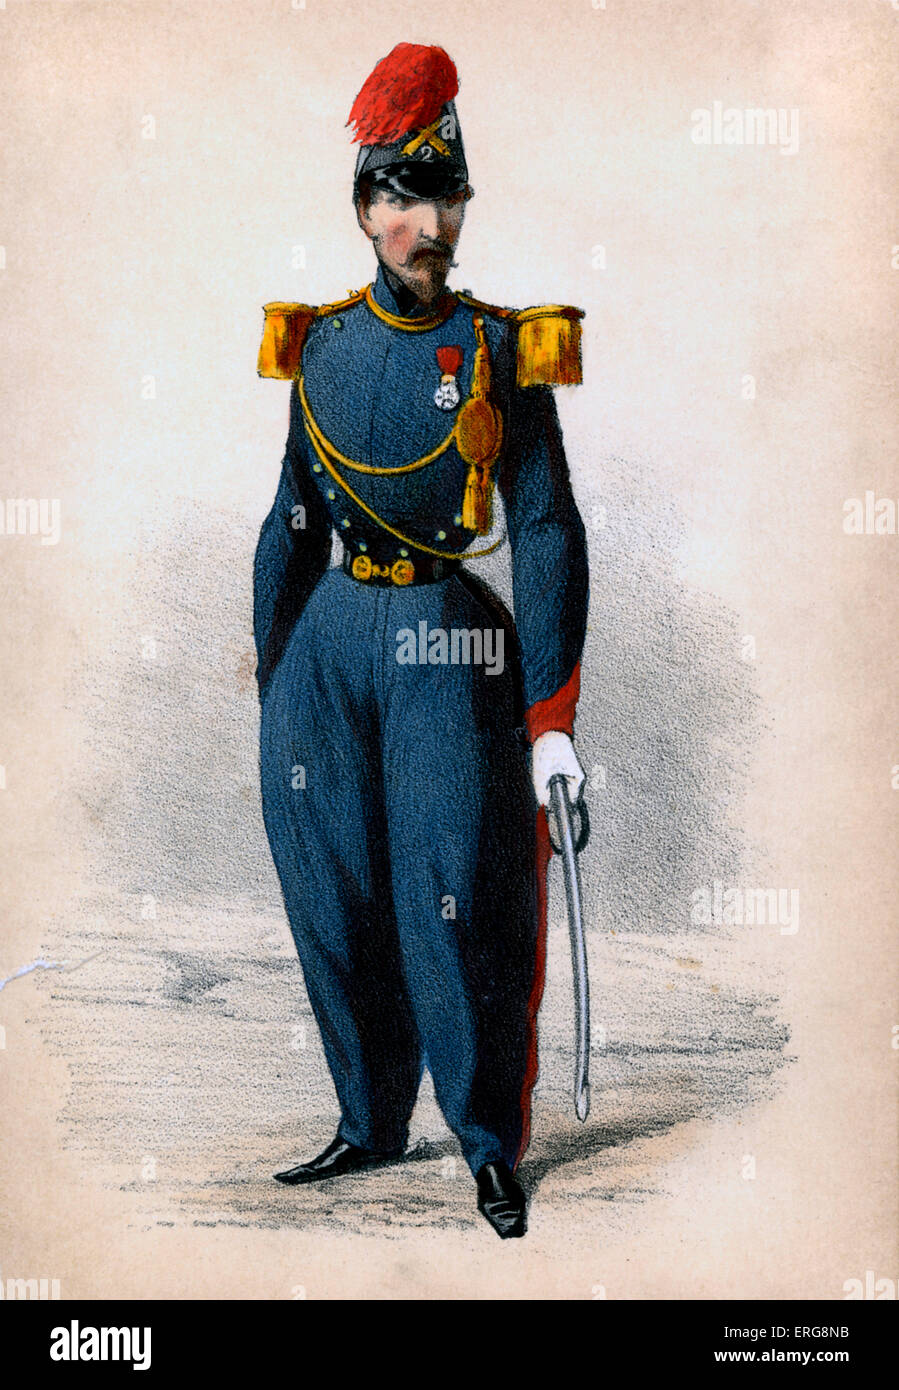 Officier d'Artillerie: siglo xix oficial de artillería. Uniformes de artillería en la mayoría de los ejércitos eran generalmente de color azul oscuro. A partir de la serie Foto de stock